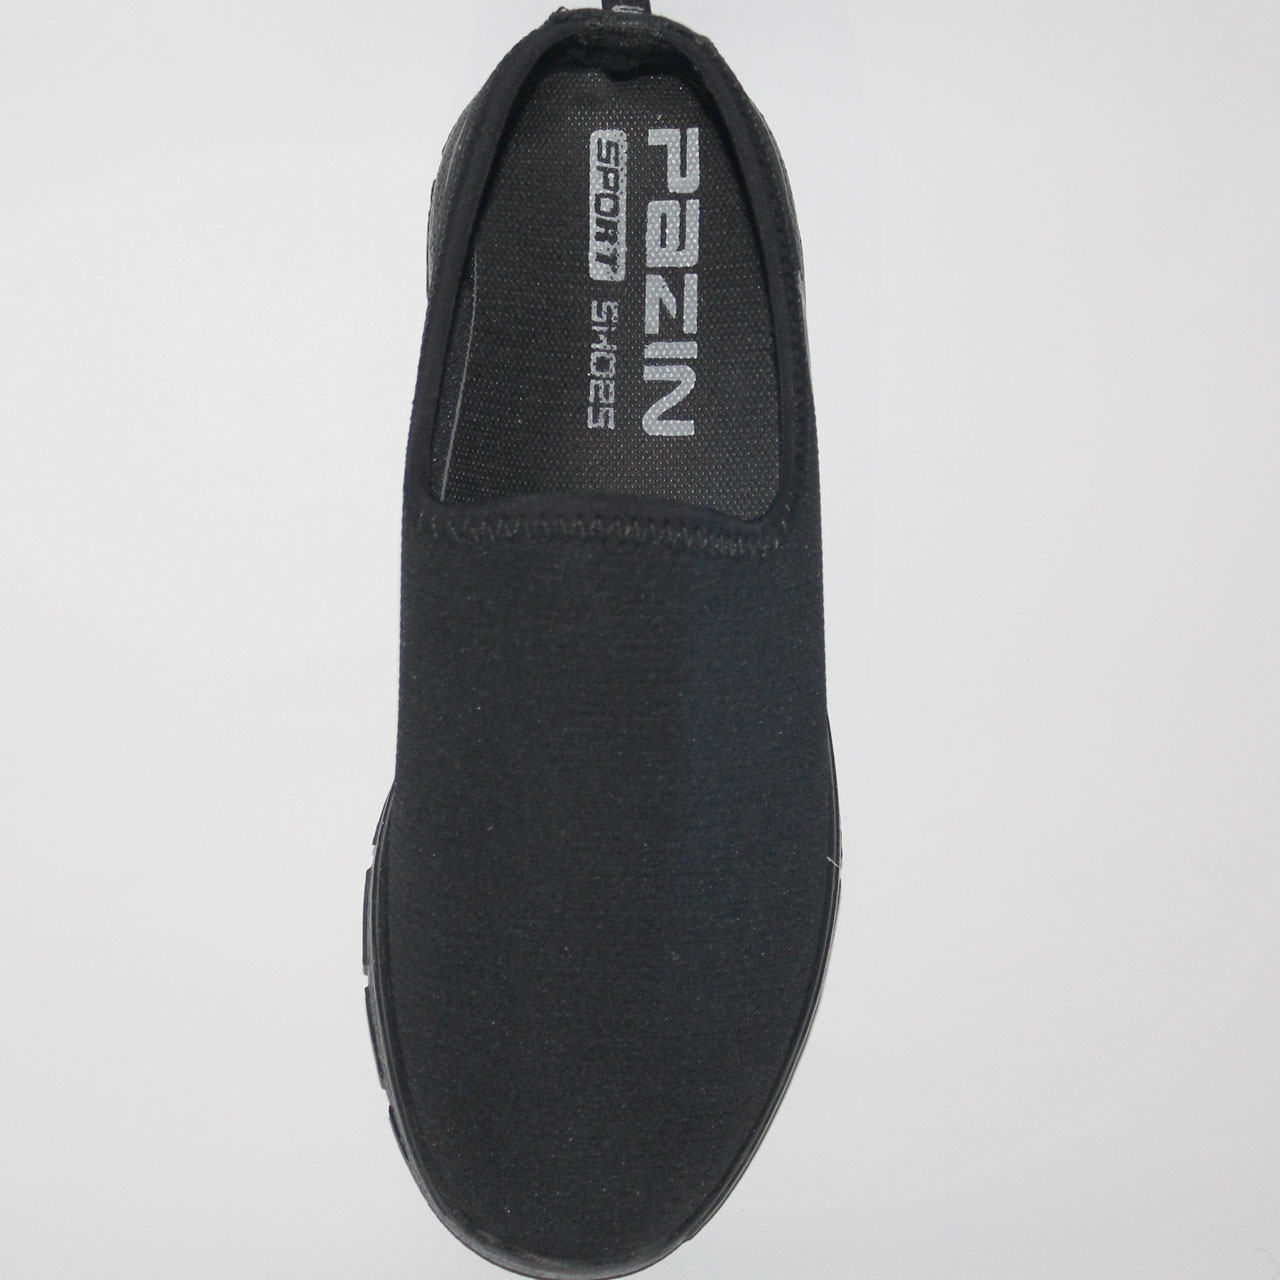 کفش راحتی مردانه مدل صفری پازین کد PZ 410 safari